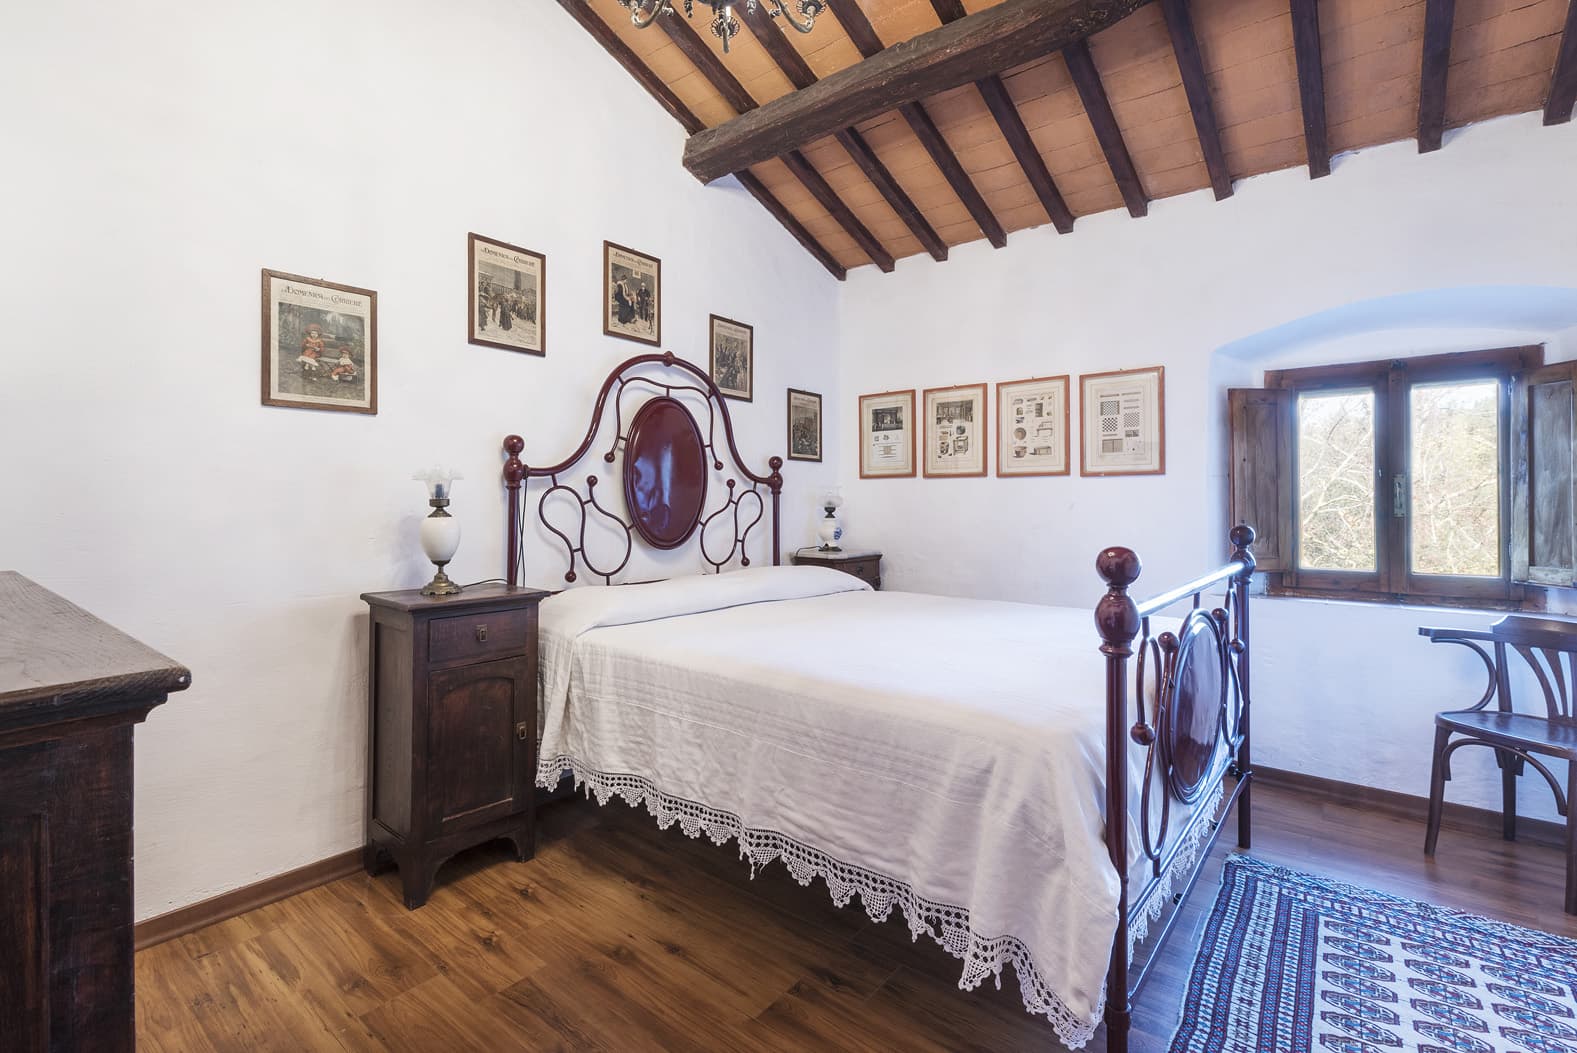  Bedroom Villa For Sale Borgo In Chianti Lp0793 2b236846e33a4000.jpg